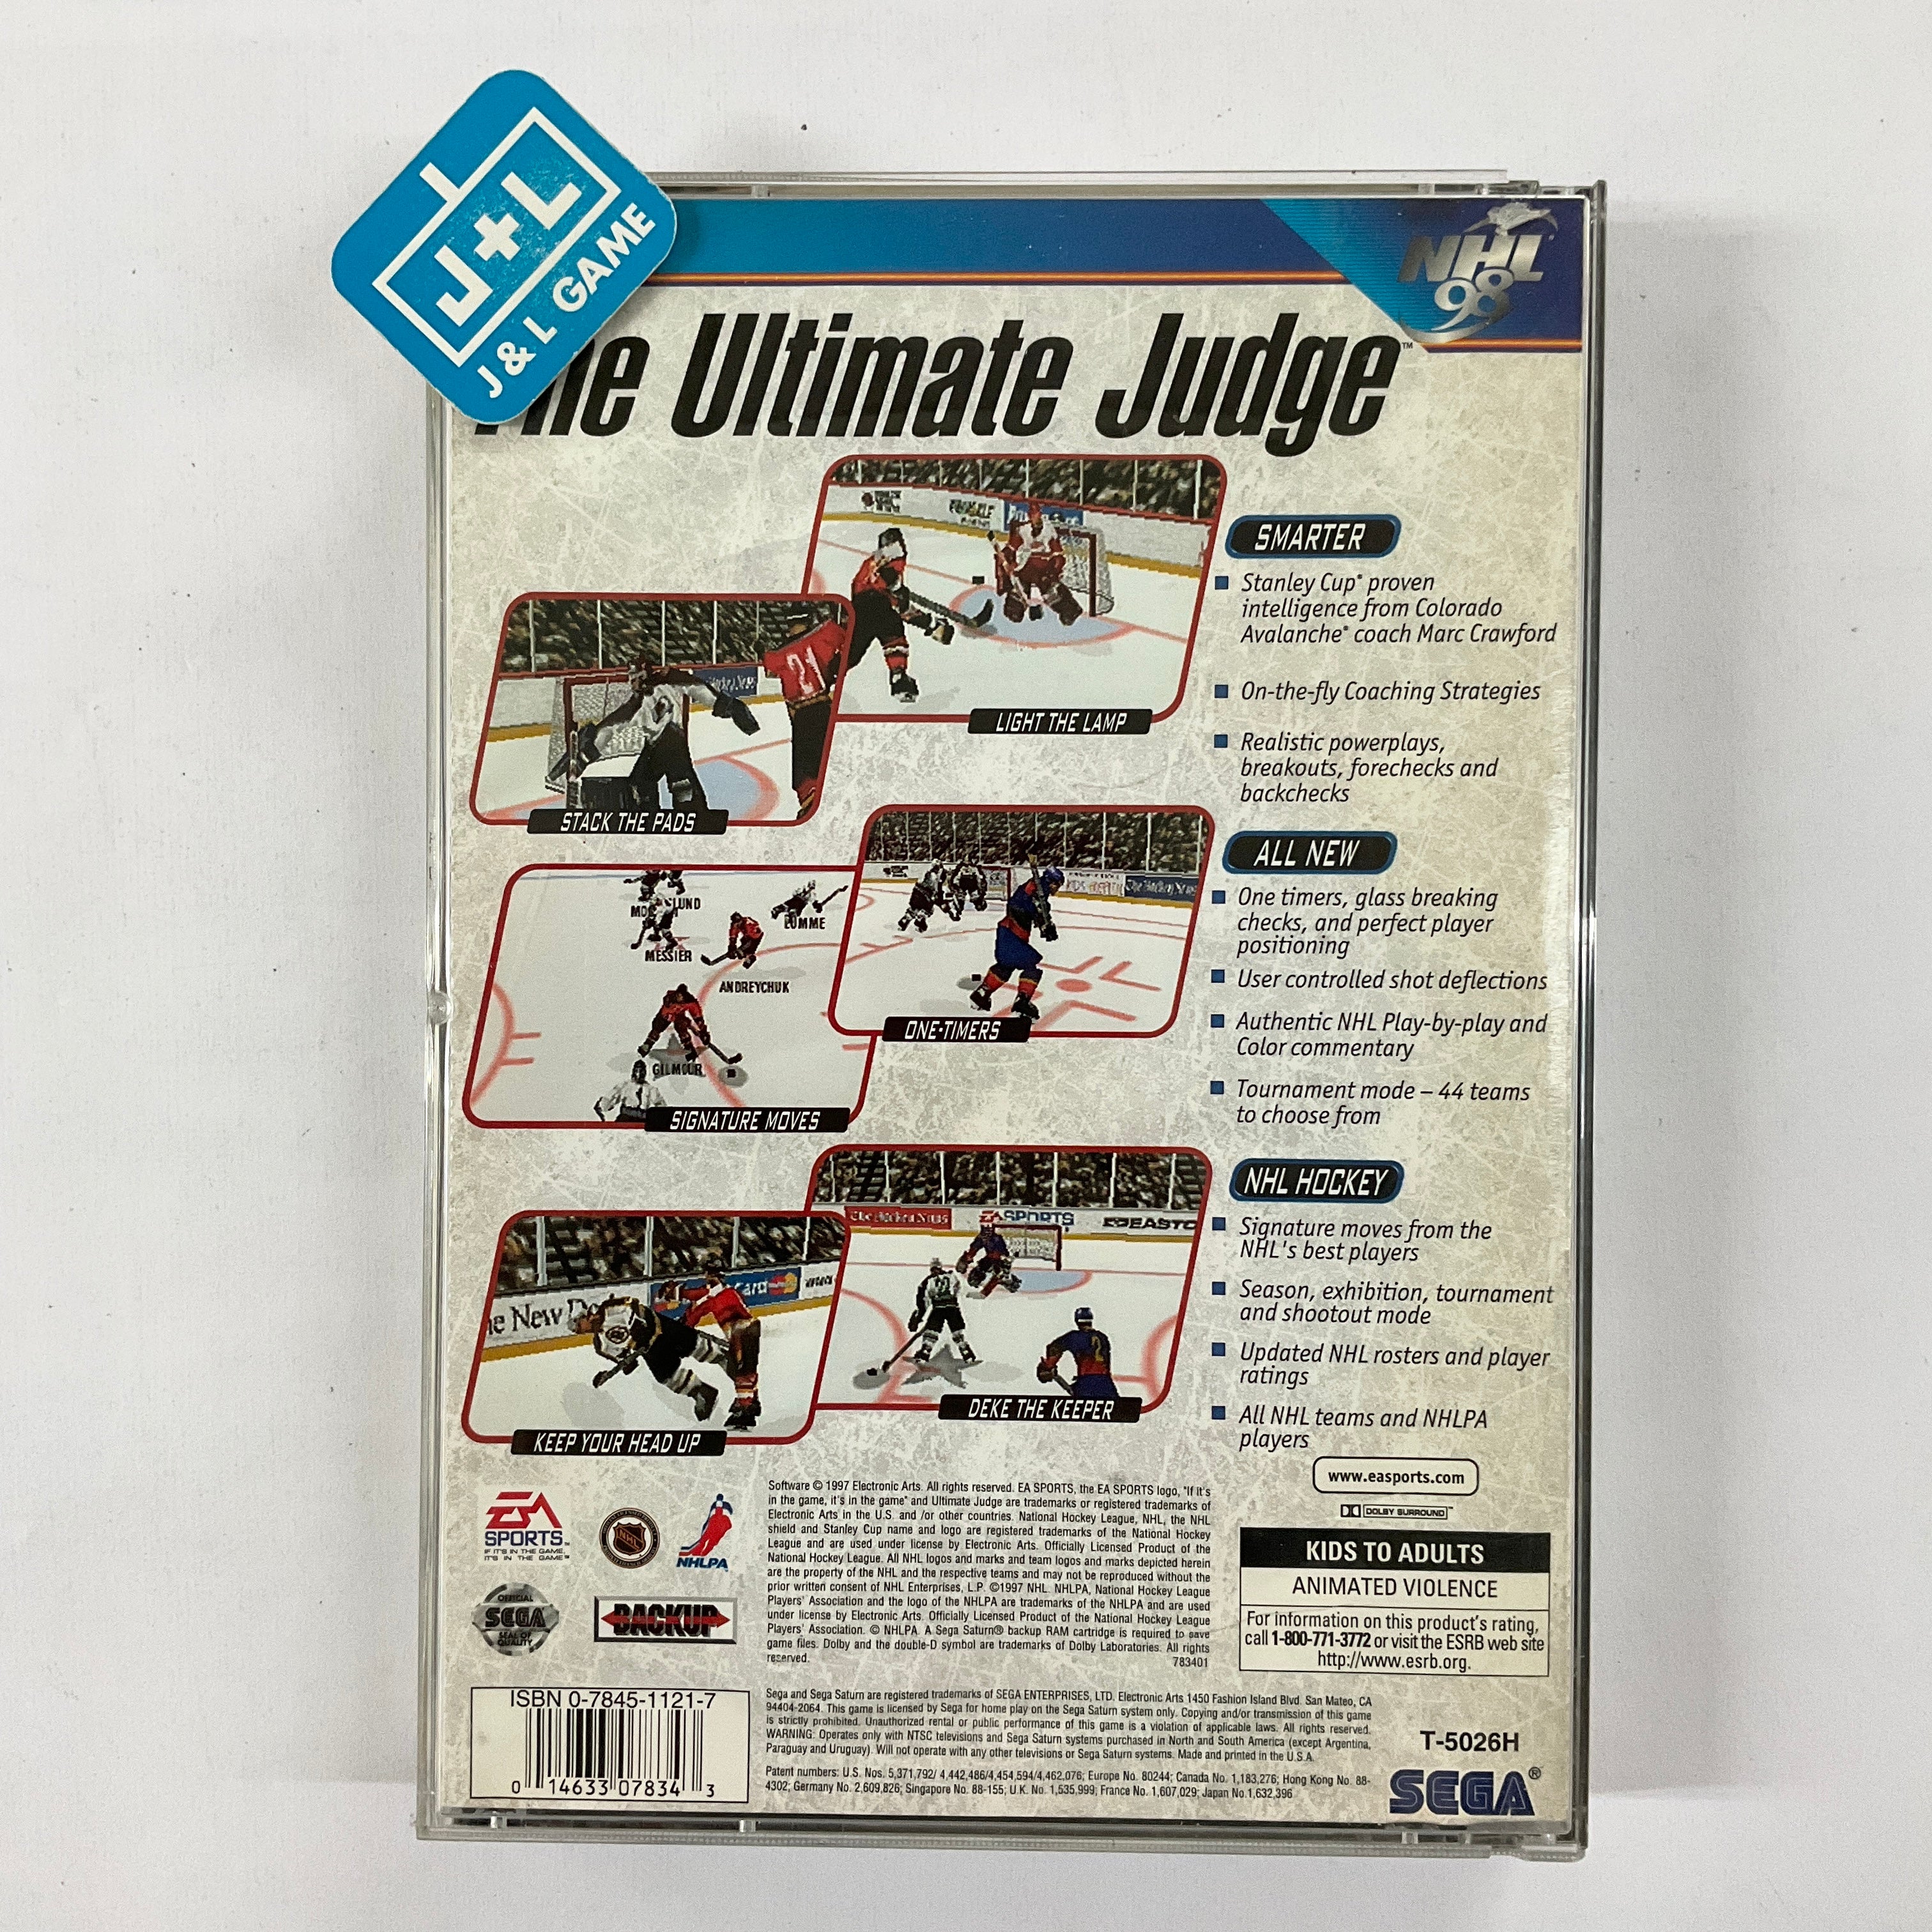 NHL 98 - (SS) SEGA Saturn [Pre-Owned] Video Games Sega   